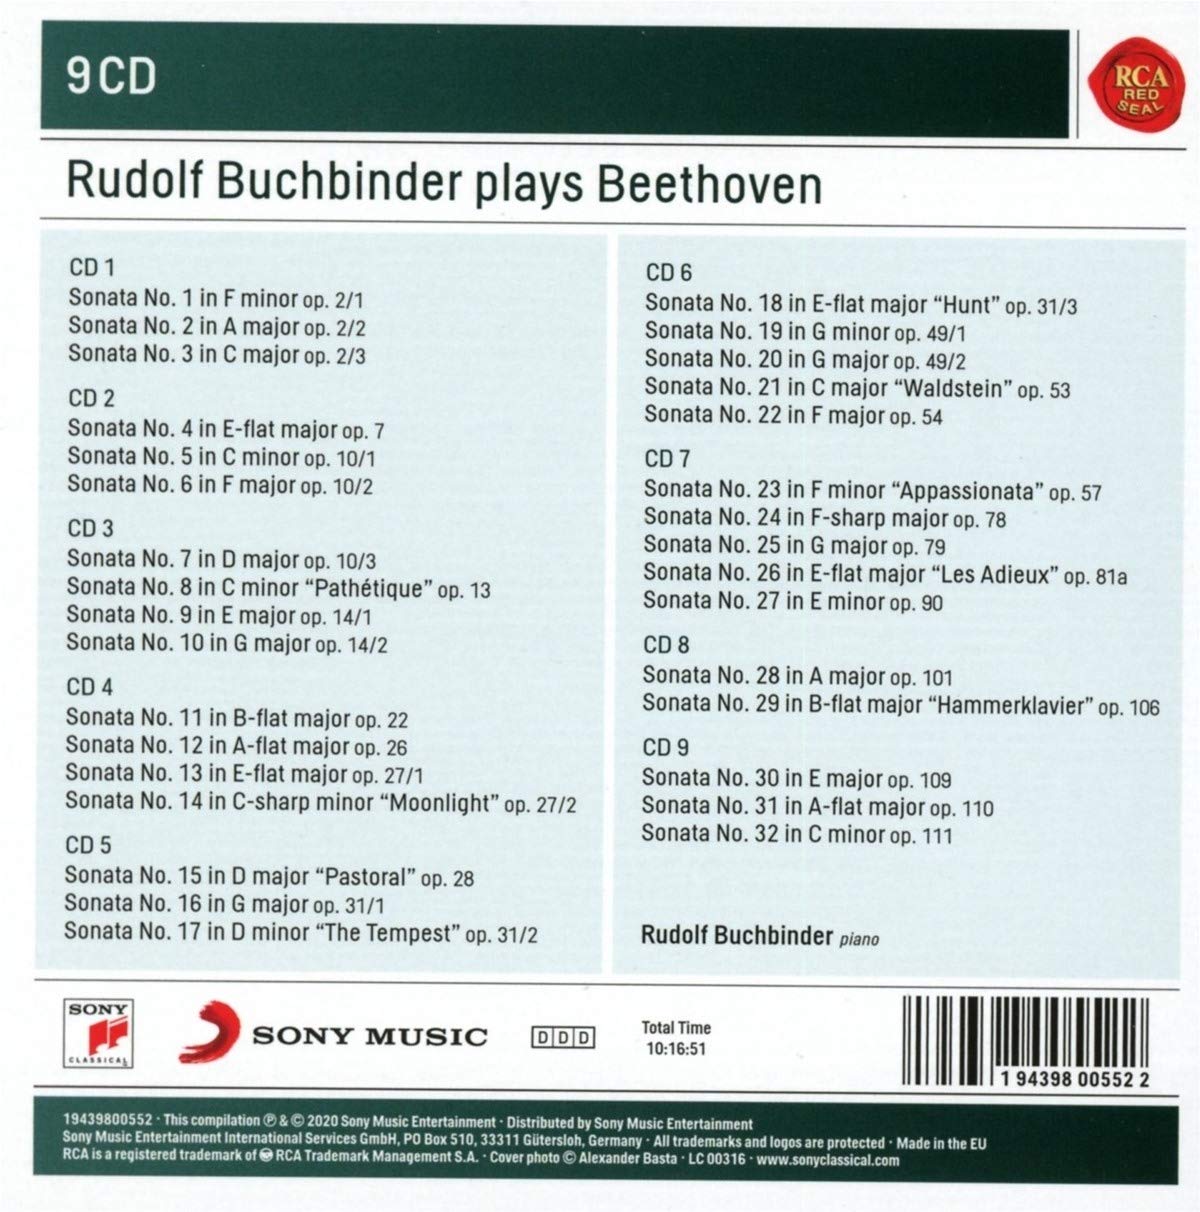 루돌프 부흐빈더가 연주하는 베토벤 피아노 소나타 전집 (Rudolf Buchbinder Plays Beethoven) 